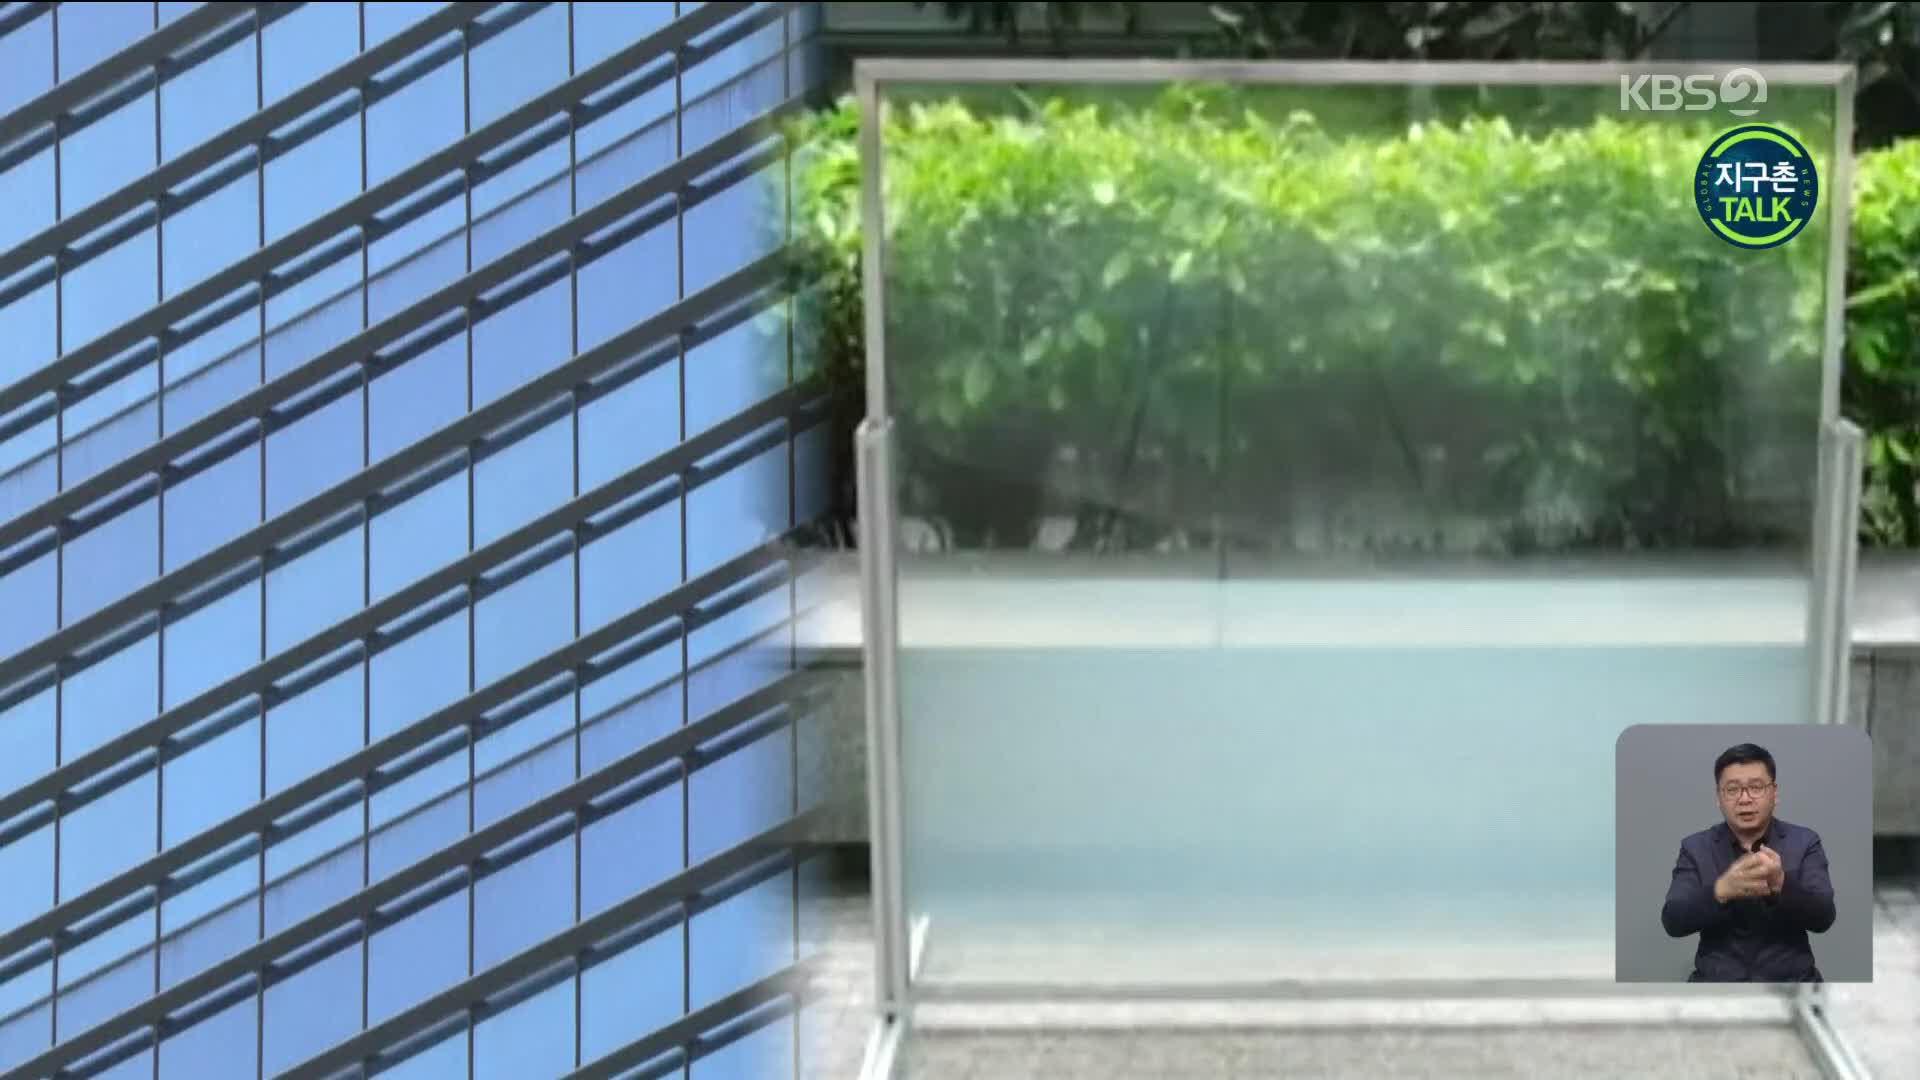 [지구촌 Talk] 싱가포르, 에너지 절약형 ‘스마트 창문’ 개발